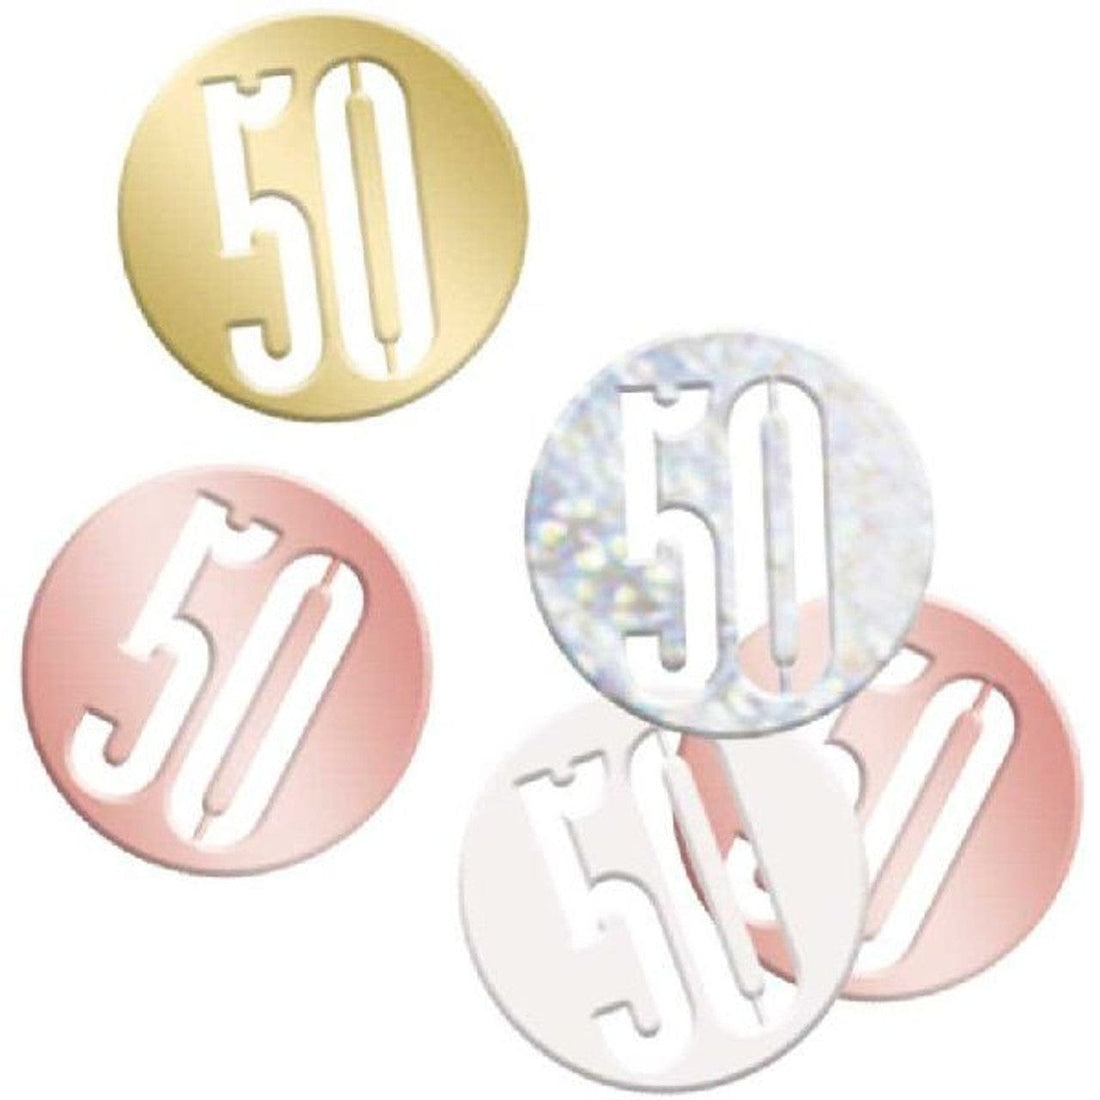 50 ára confetti (gyllt og rósagyllt) 14g